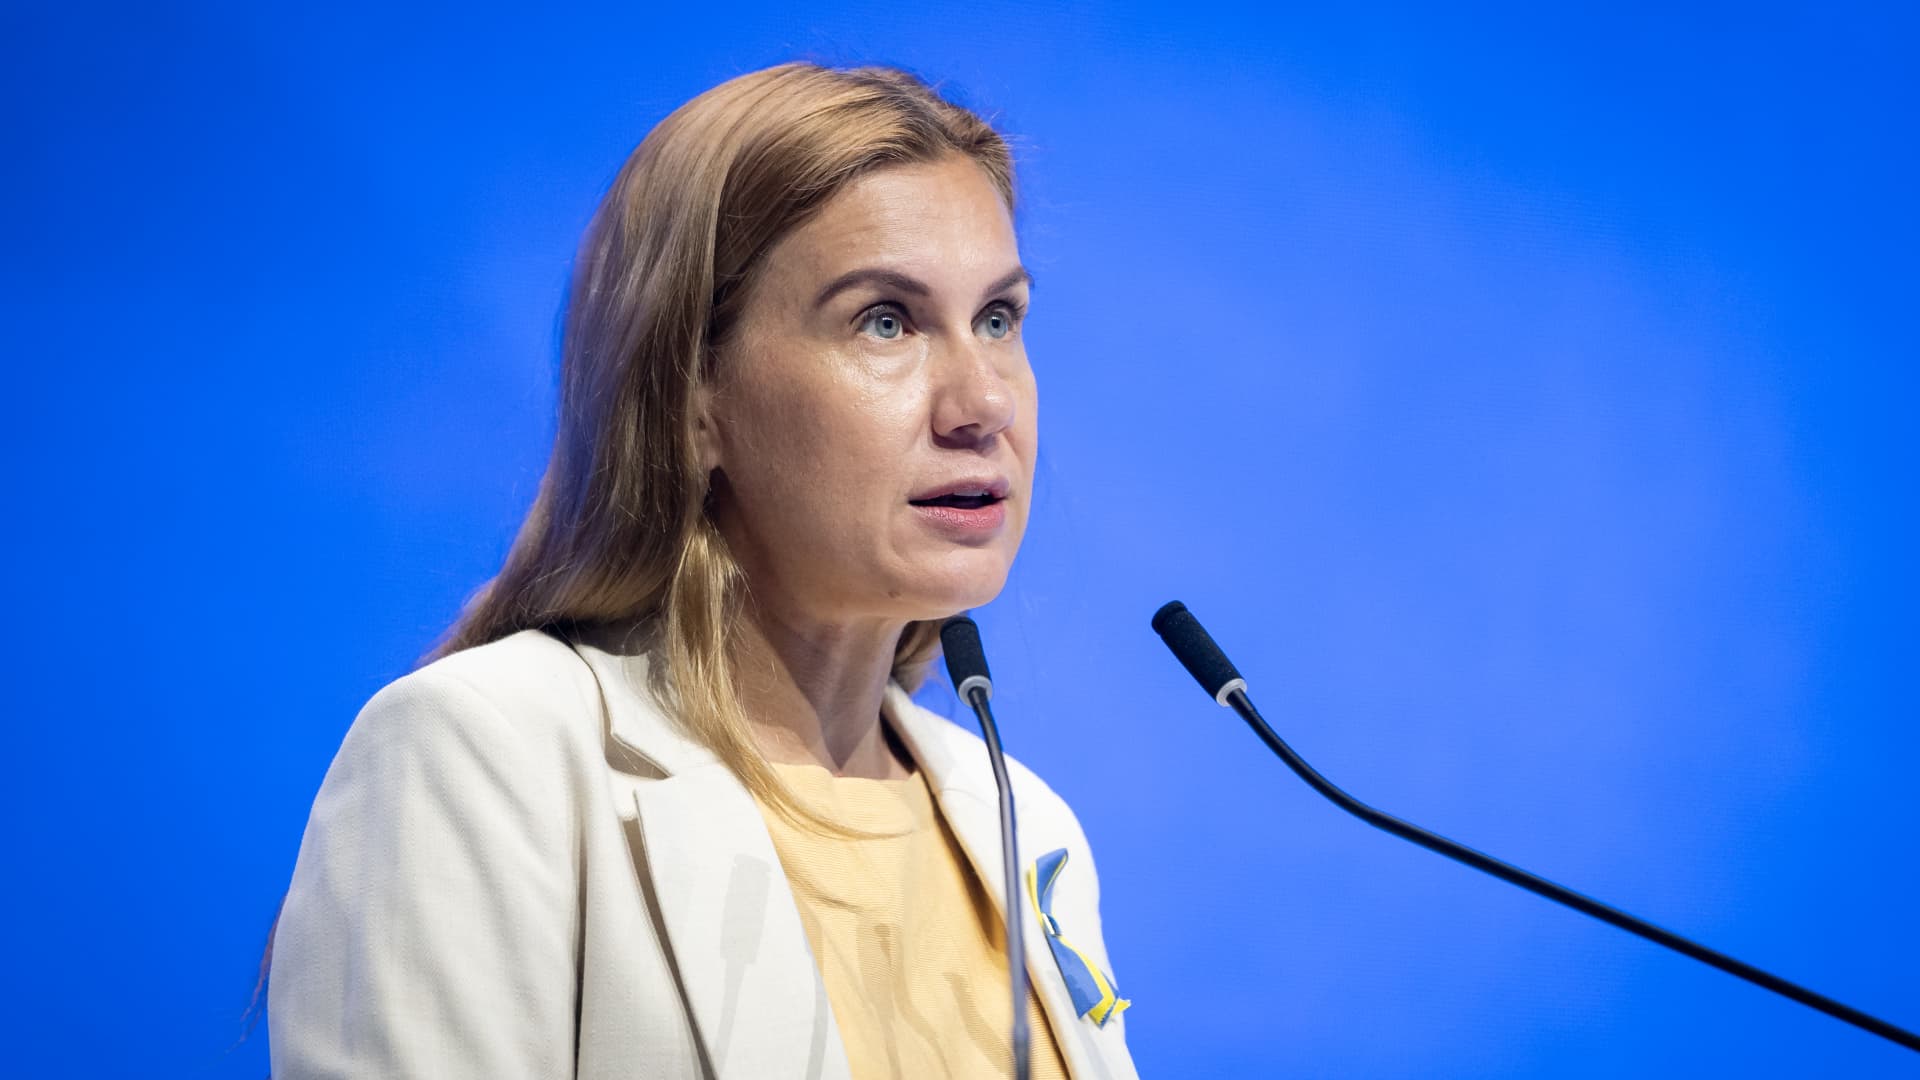 European Commissioner for Energy Kadri Simson during the European Economic Congress in Katowice, Poland on April 25, 2022.